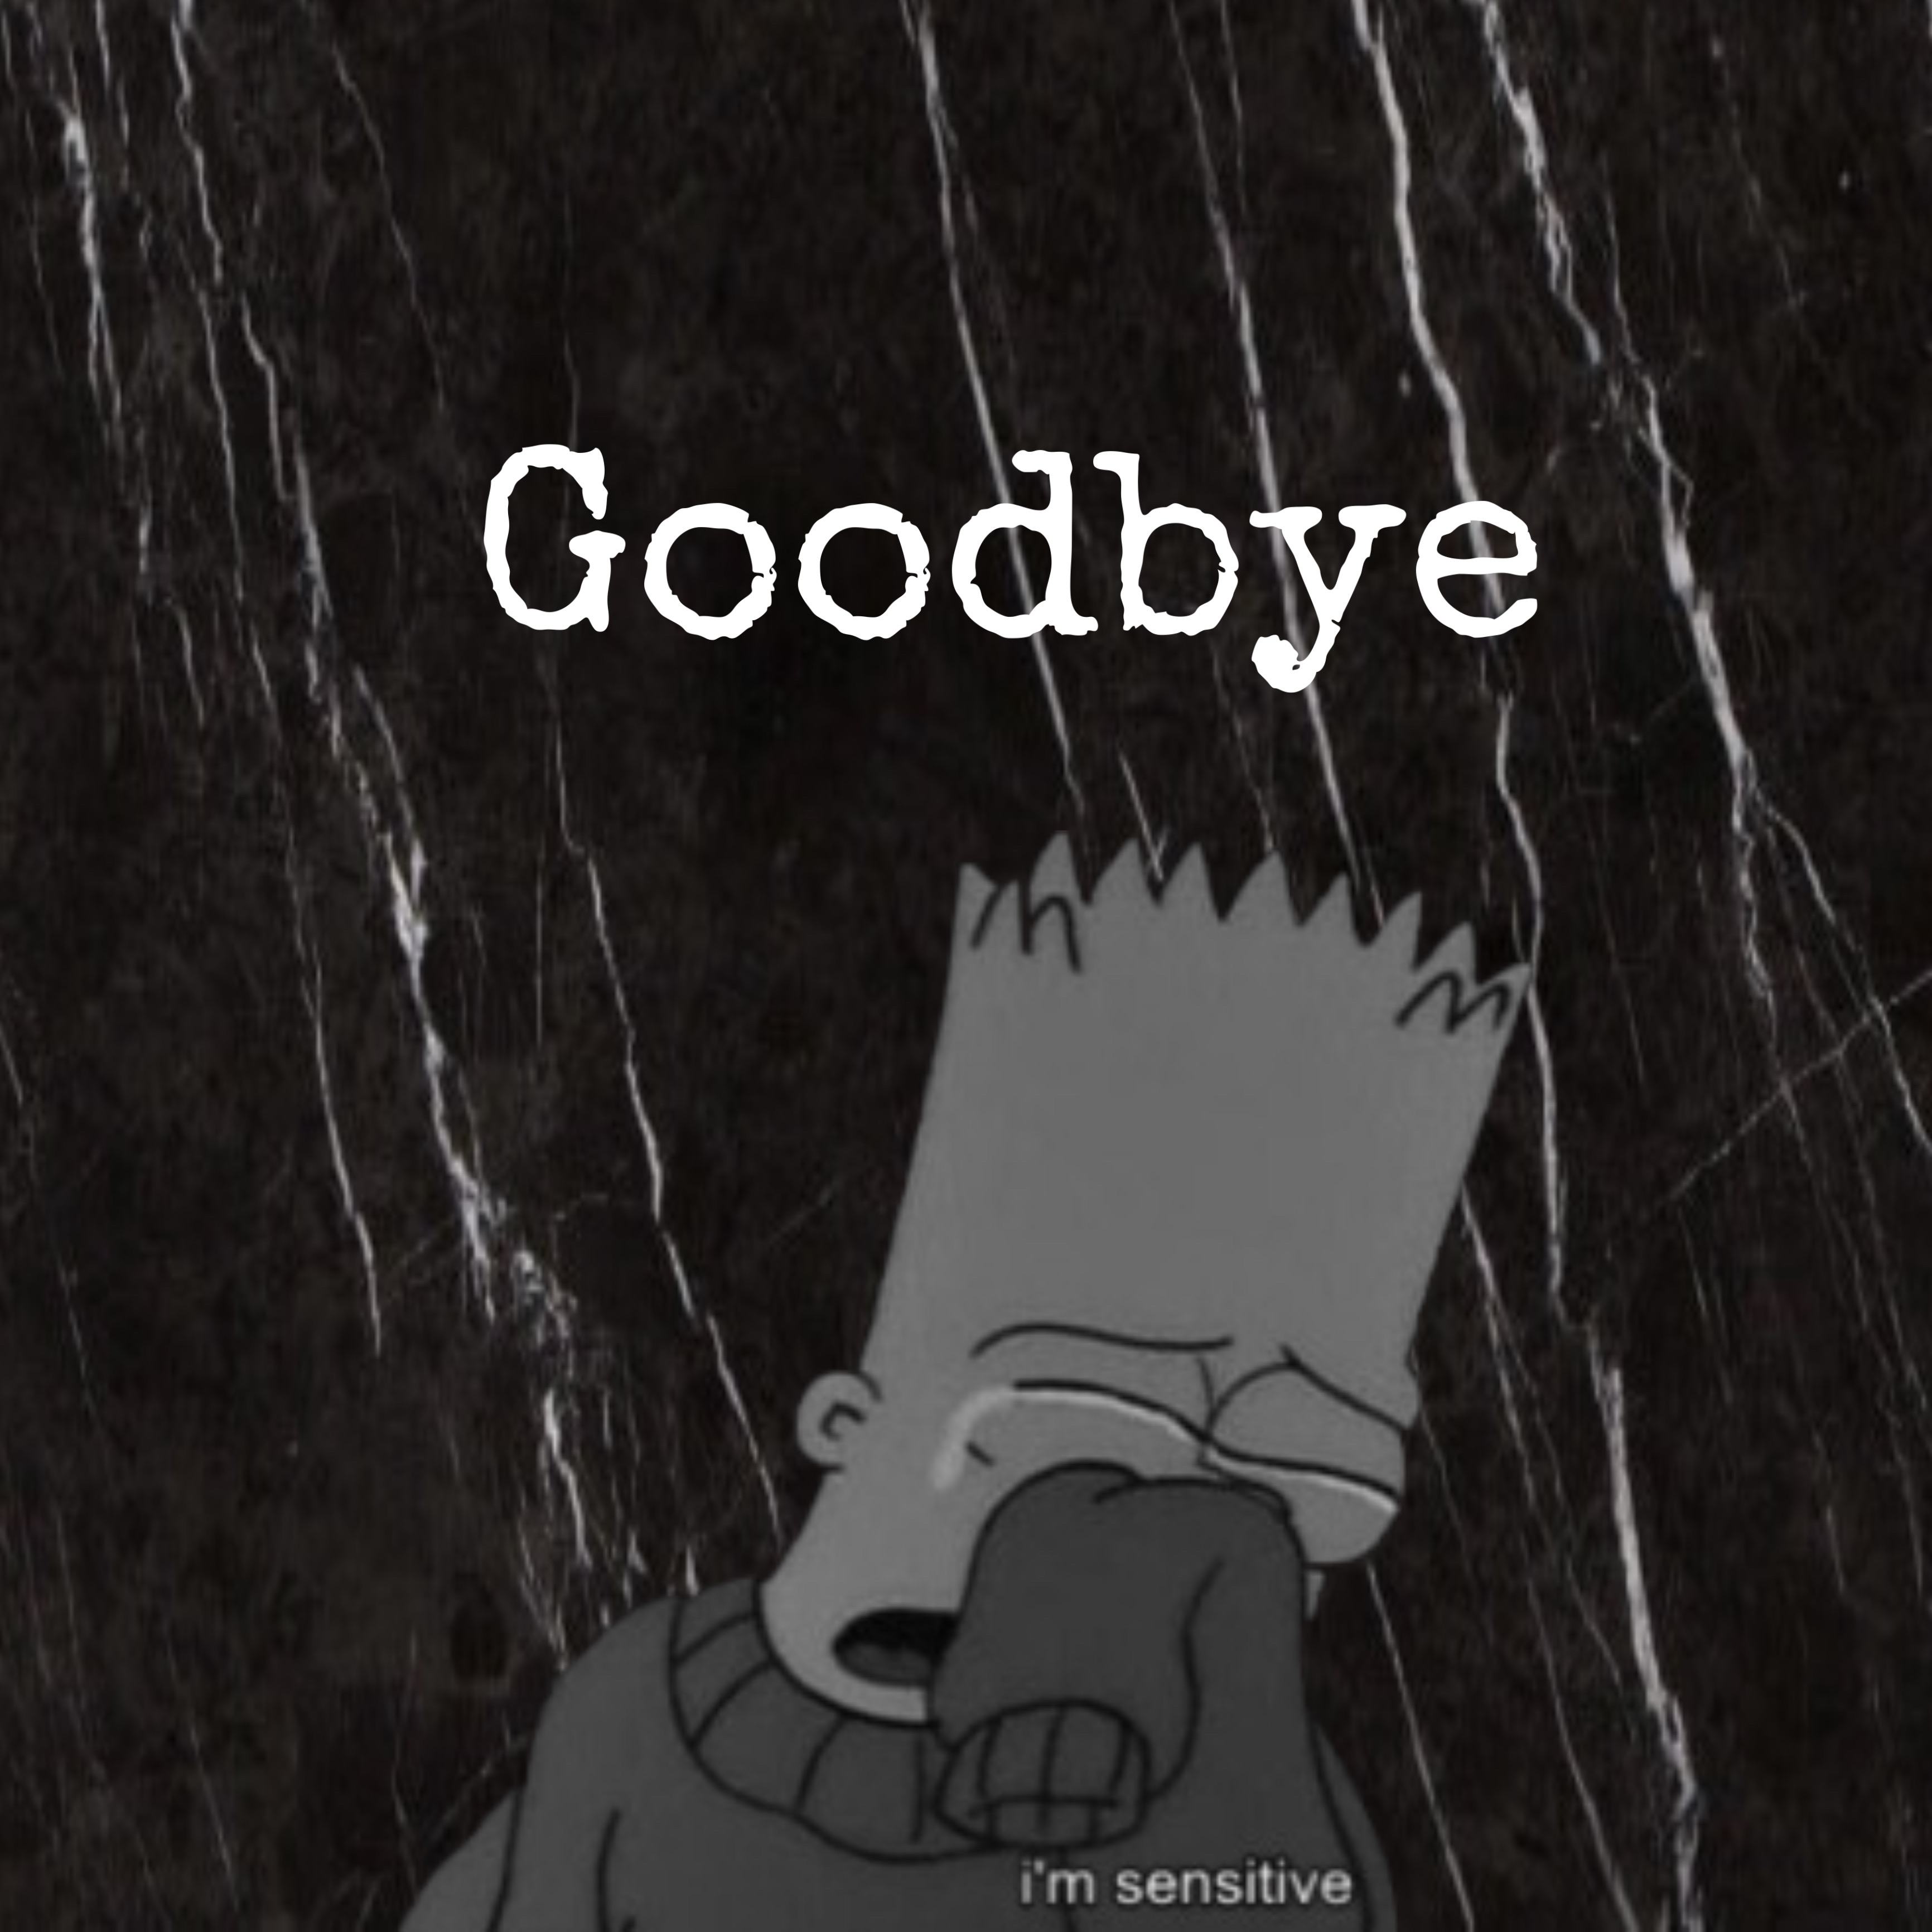 sad goodbye images